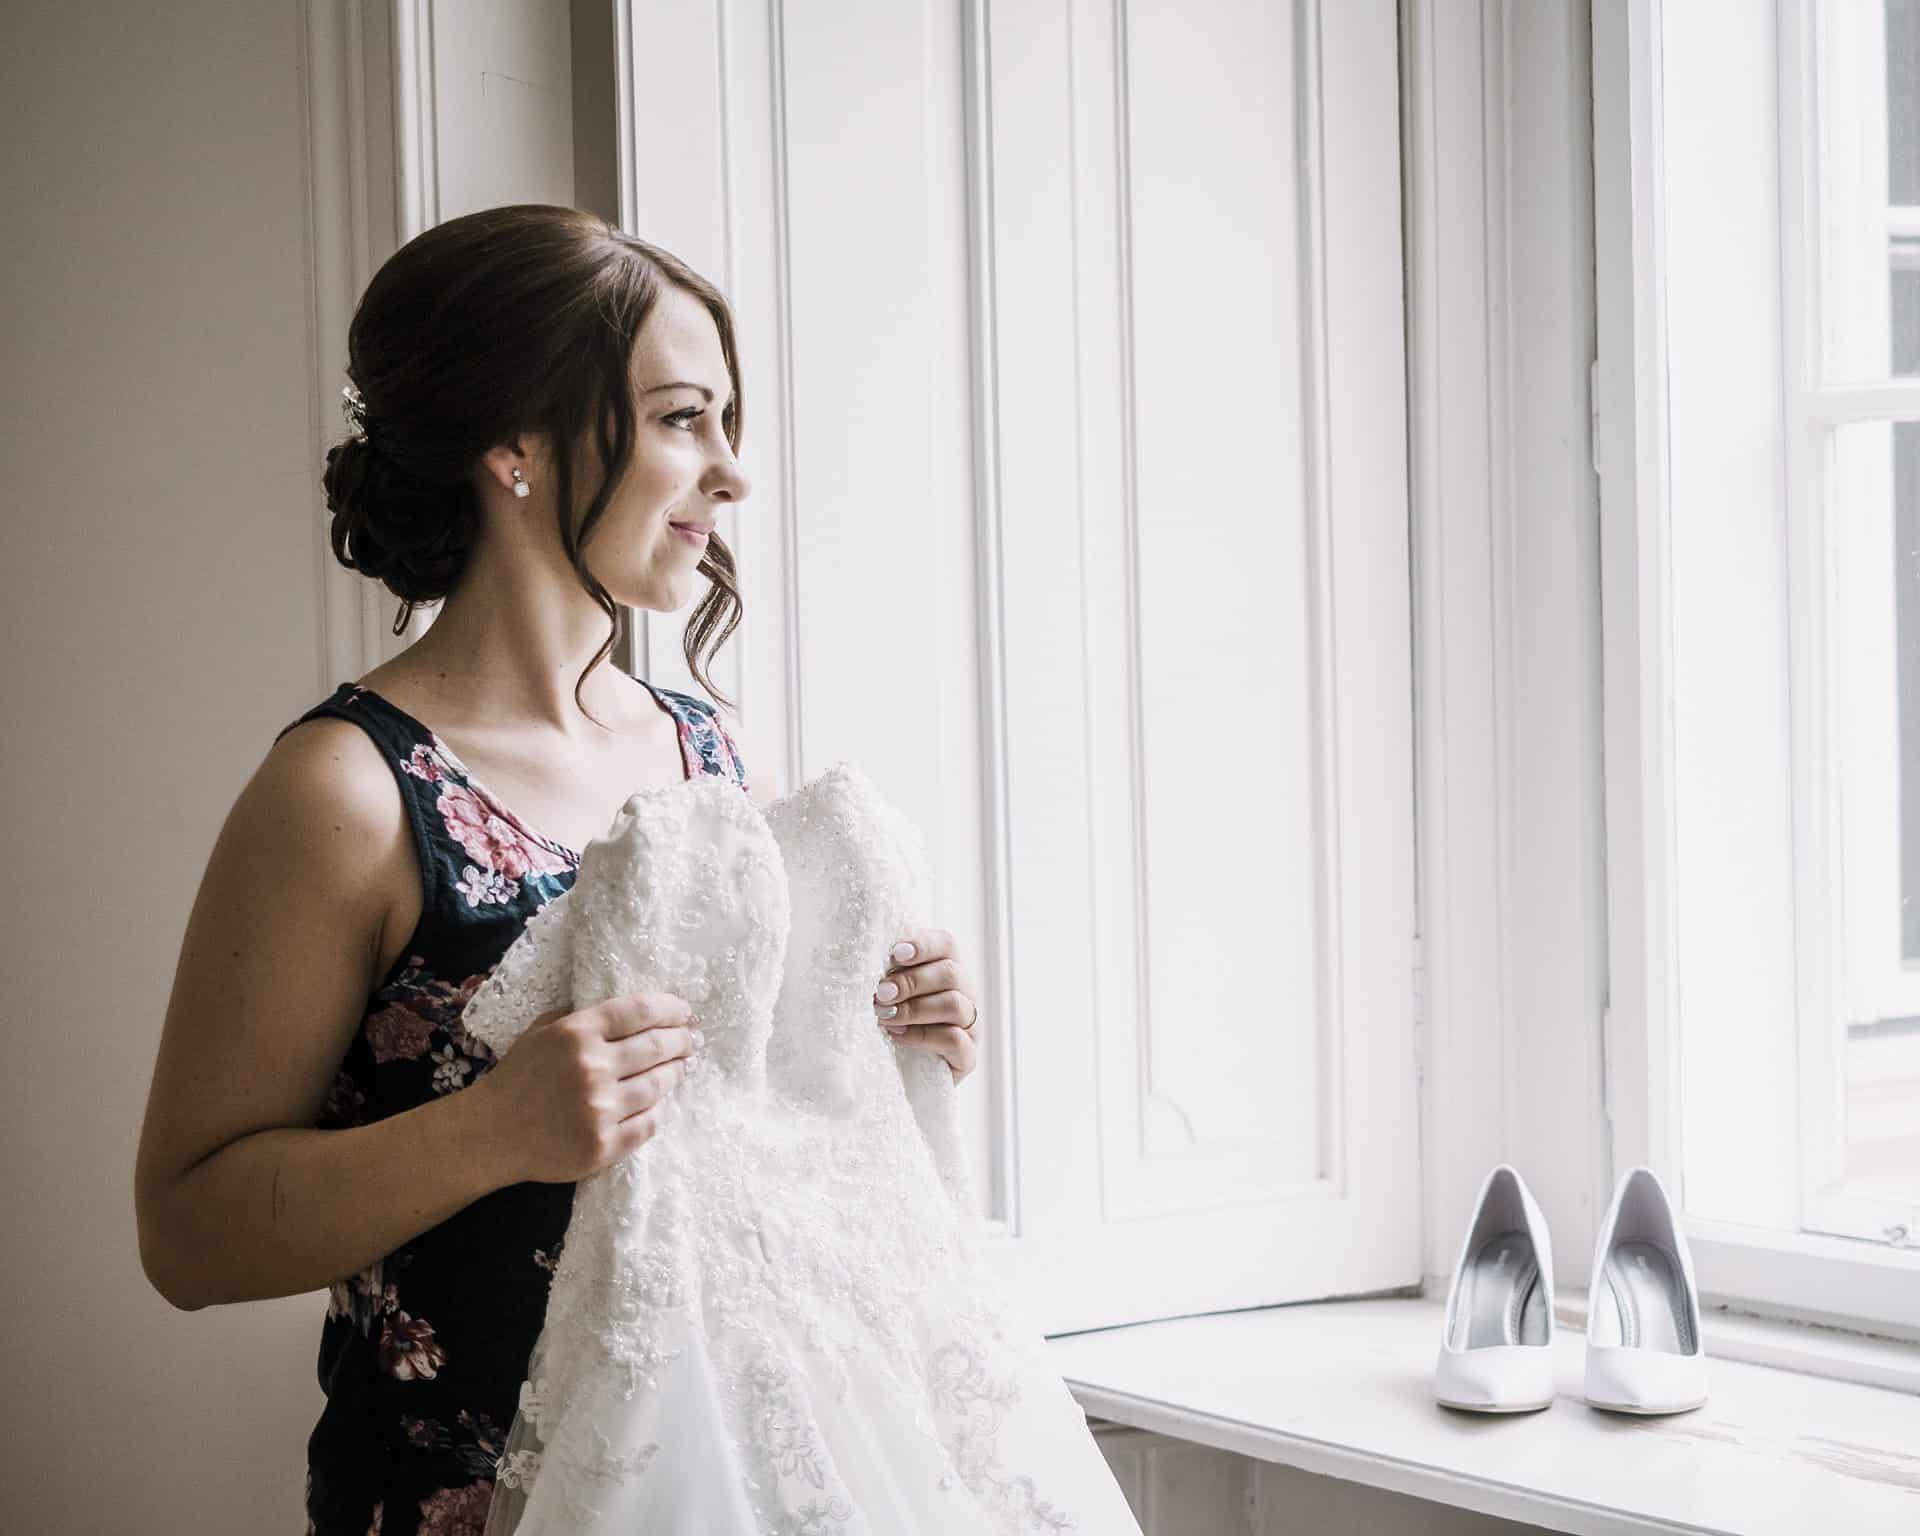 Eine Braut schaut vor einem Fenster auf ihr Hochzeitskleid.